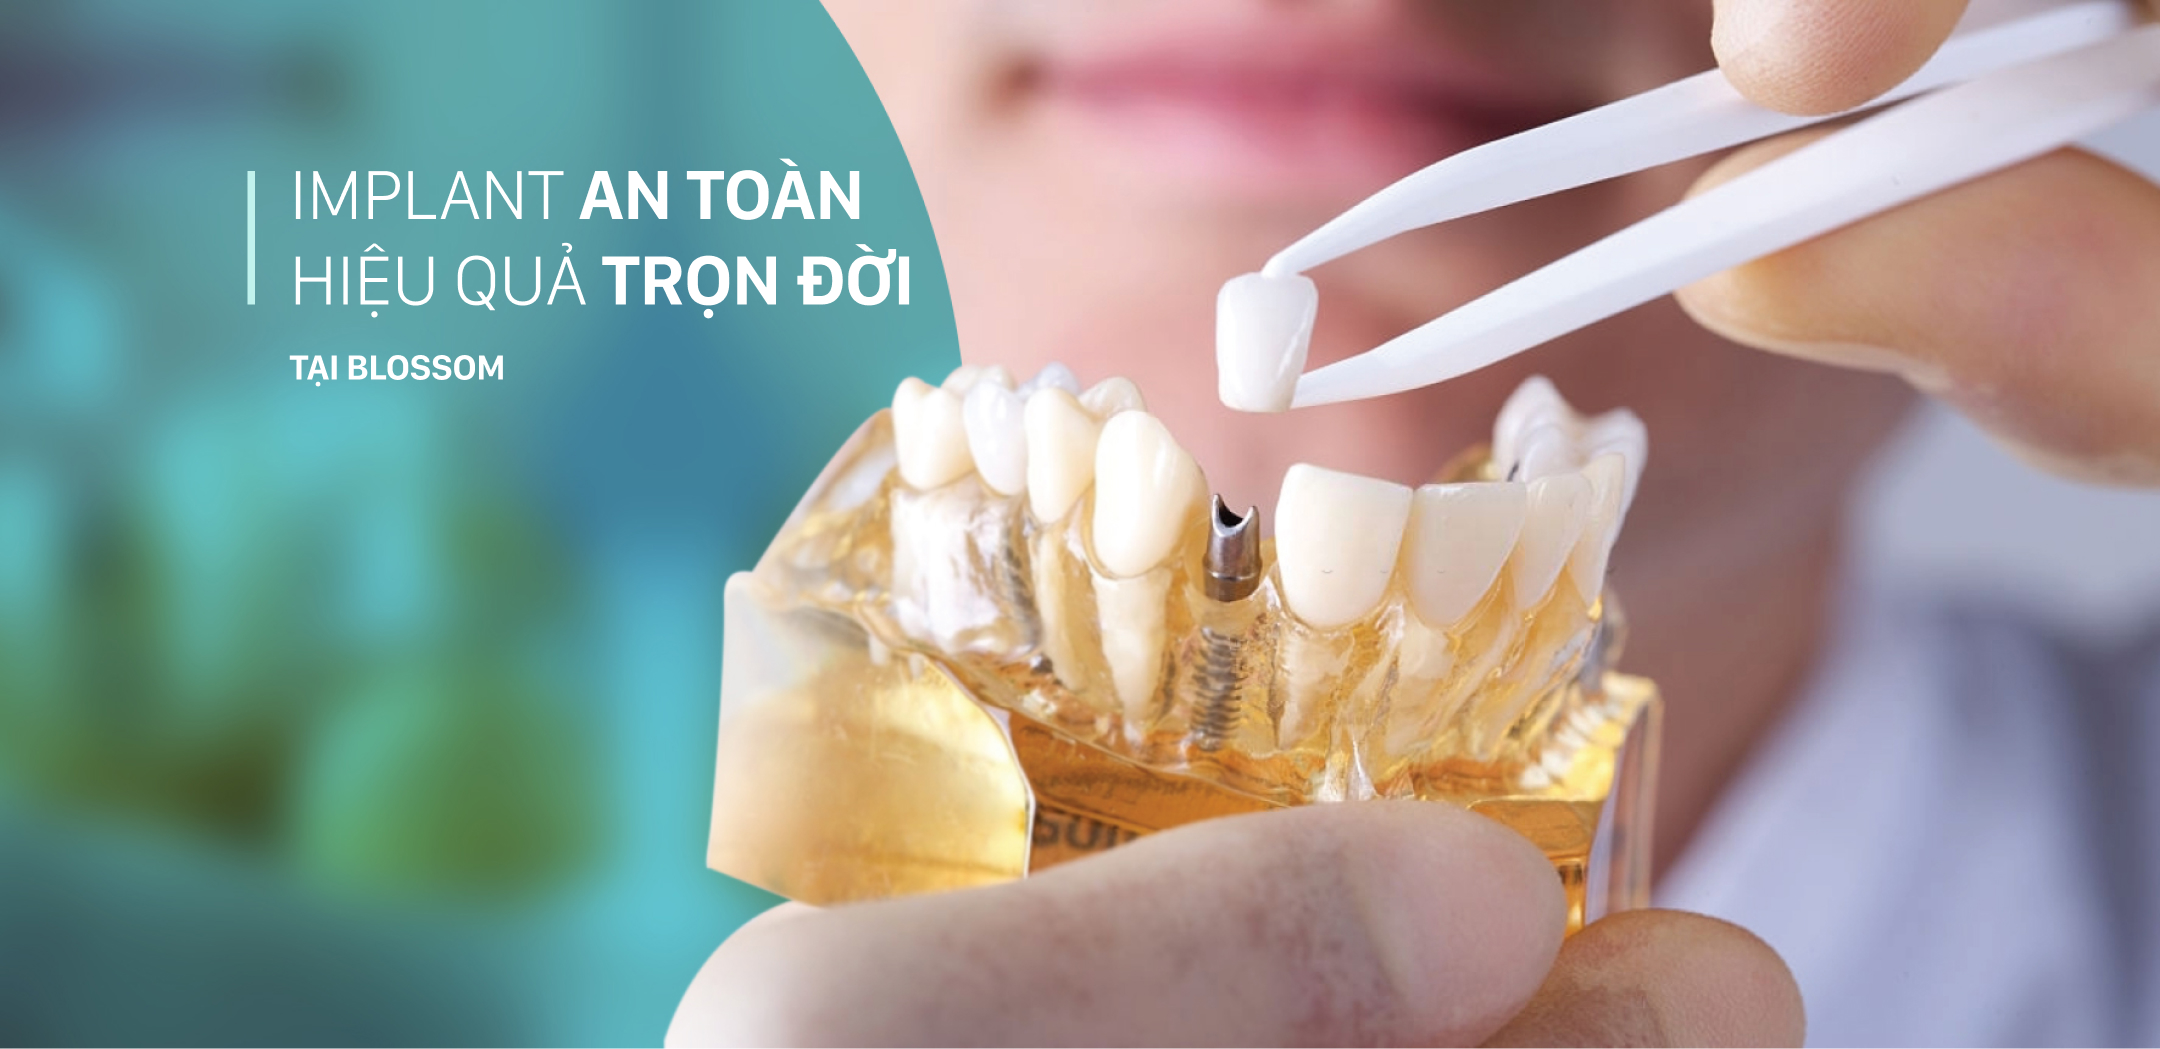 Implant an toàn là gì? blossom clinic Dán sứ Blossom LamiFilm không mài Trồng răng Implant Niềng răng Invisalign